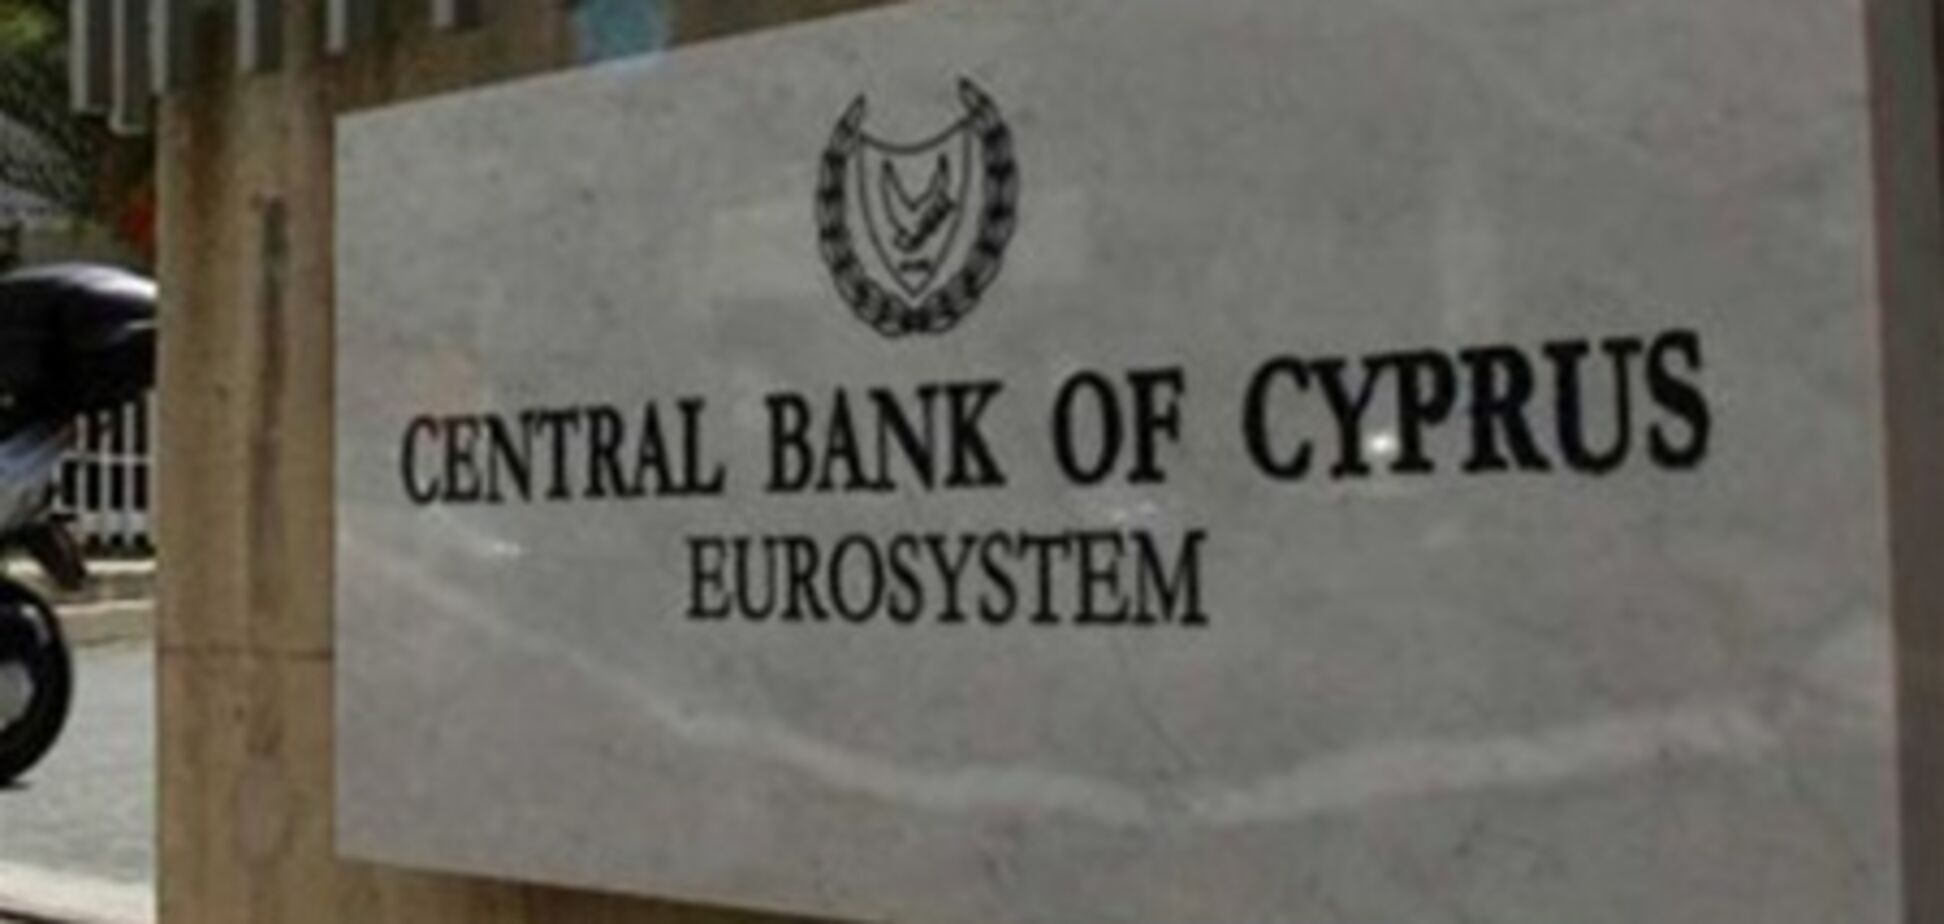 ЦБ Кипра будет пересматривать ситуацию ежедневно